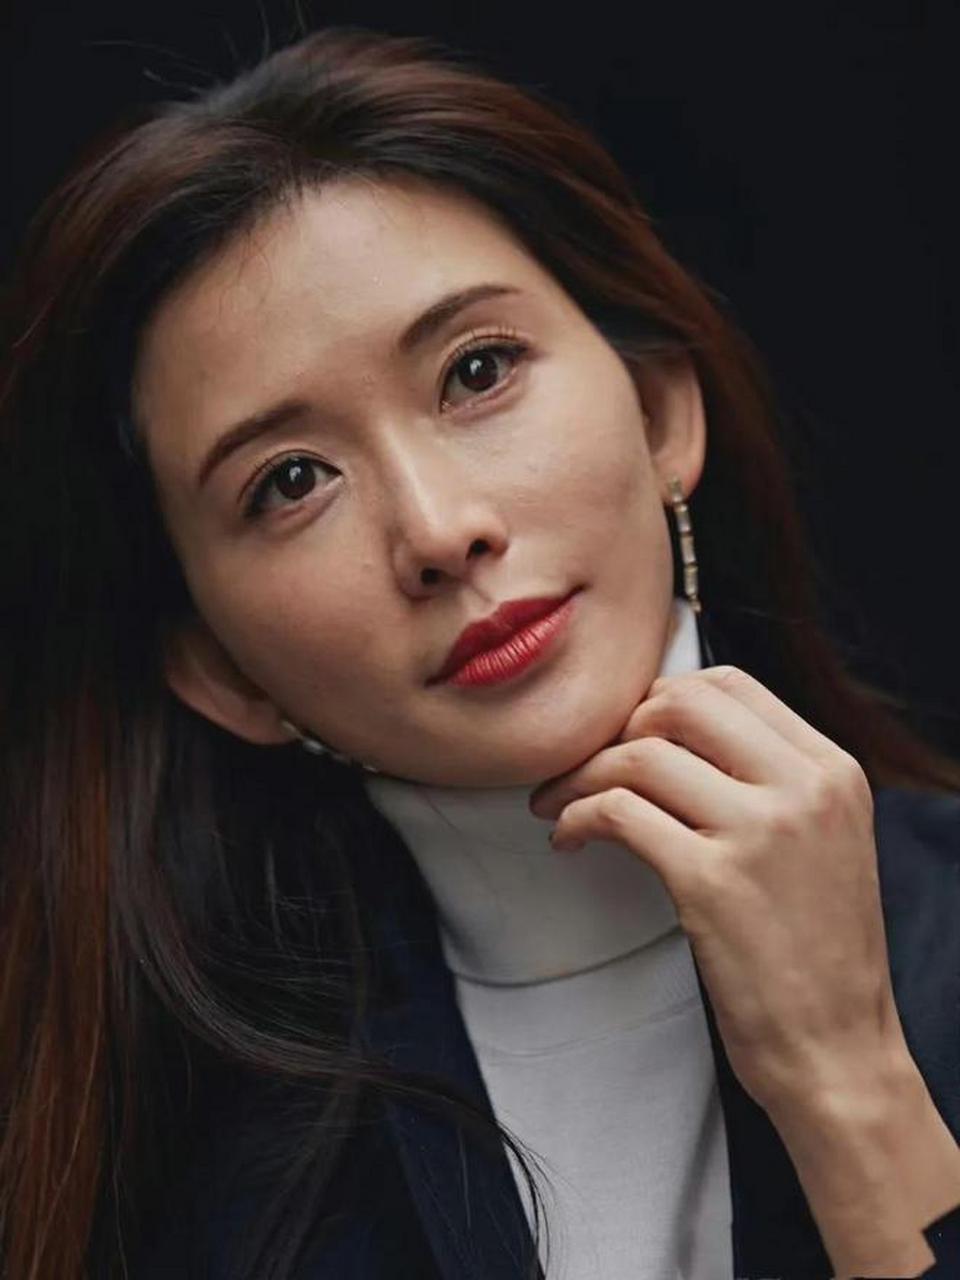 48岁的台湾女星林志玲最近曝光了一组素颜高清照片